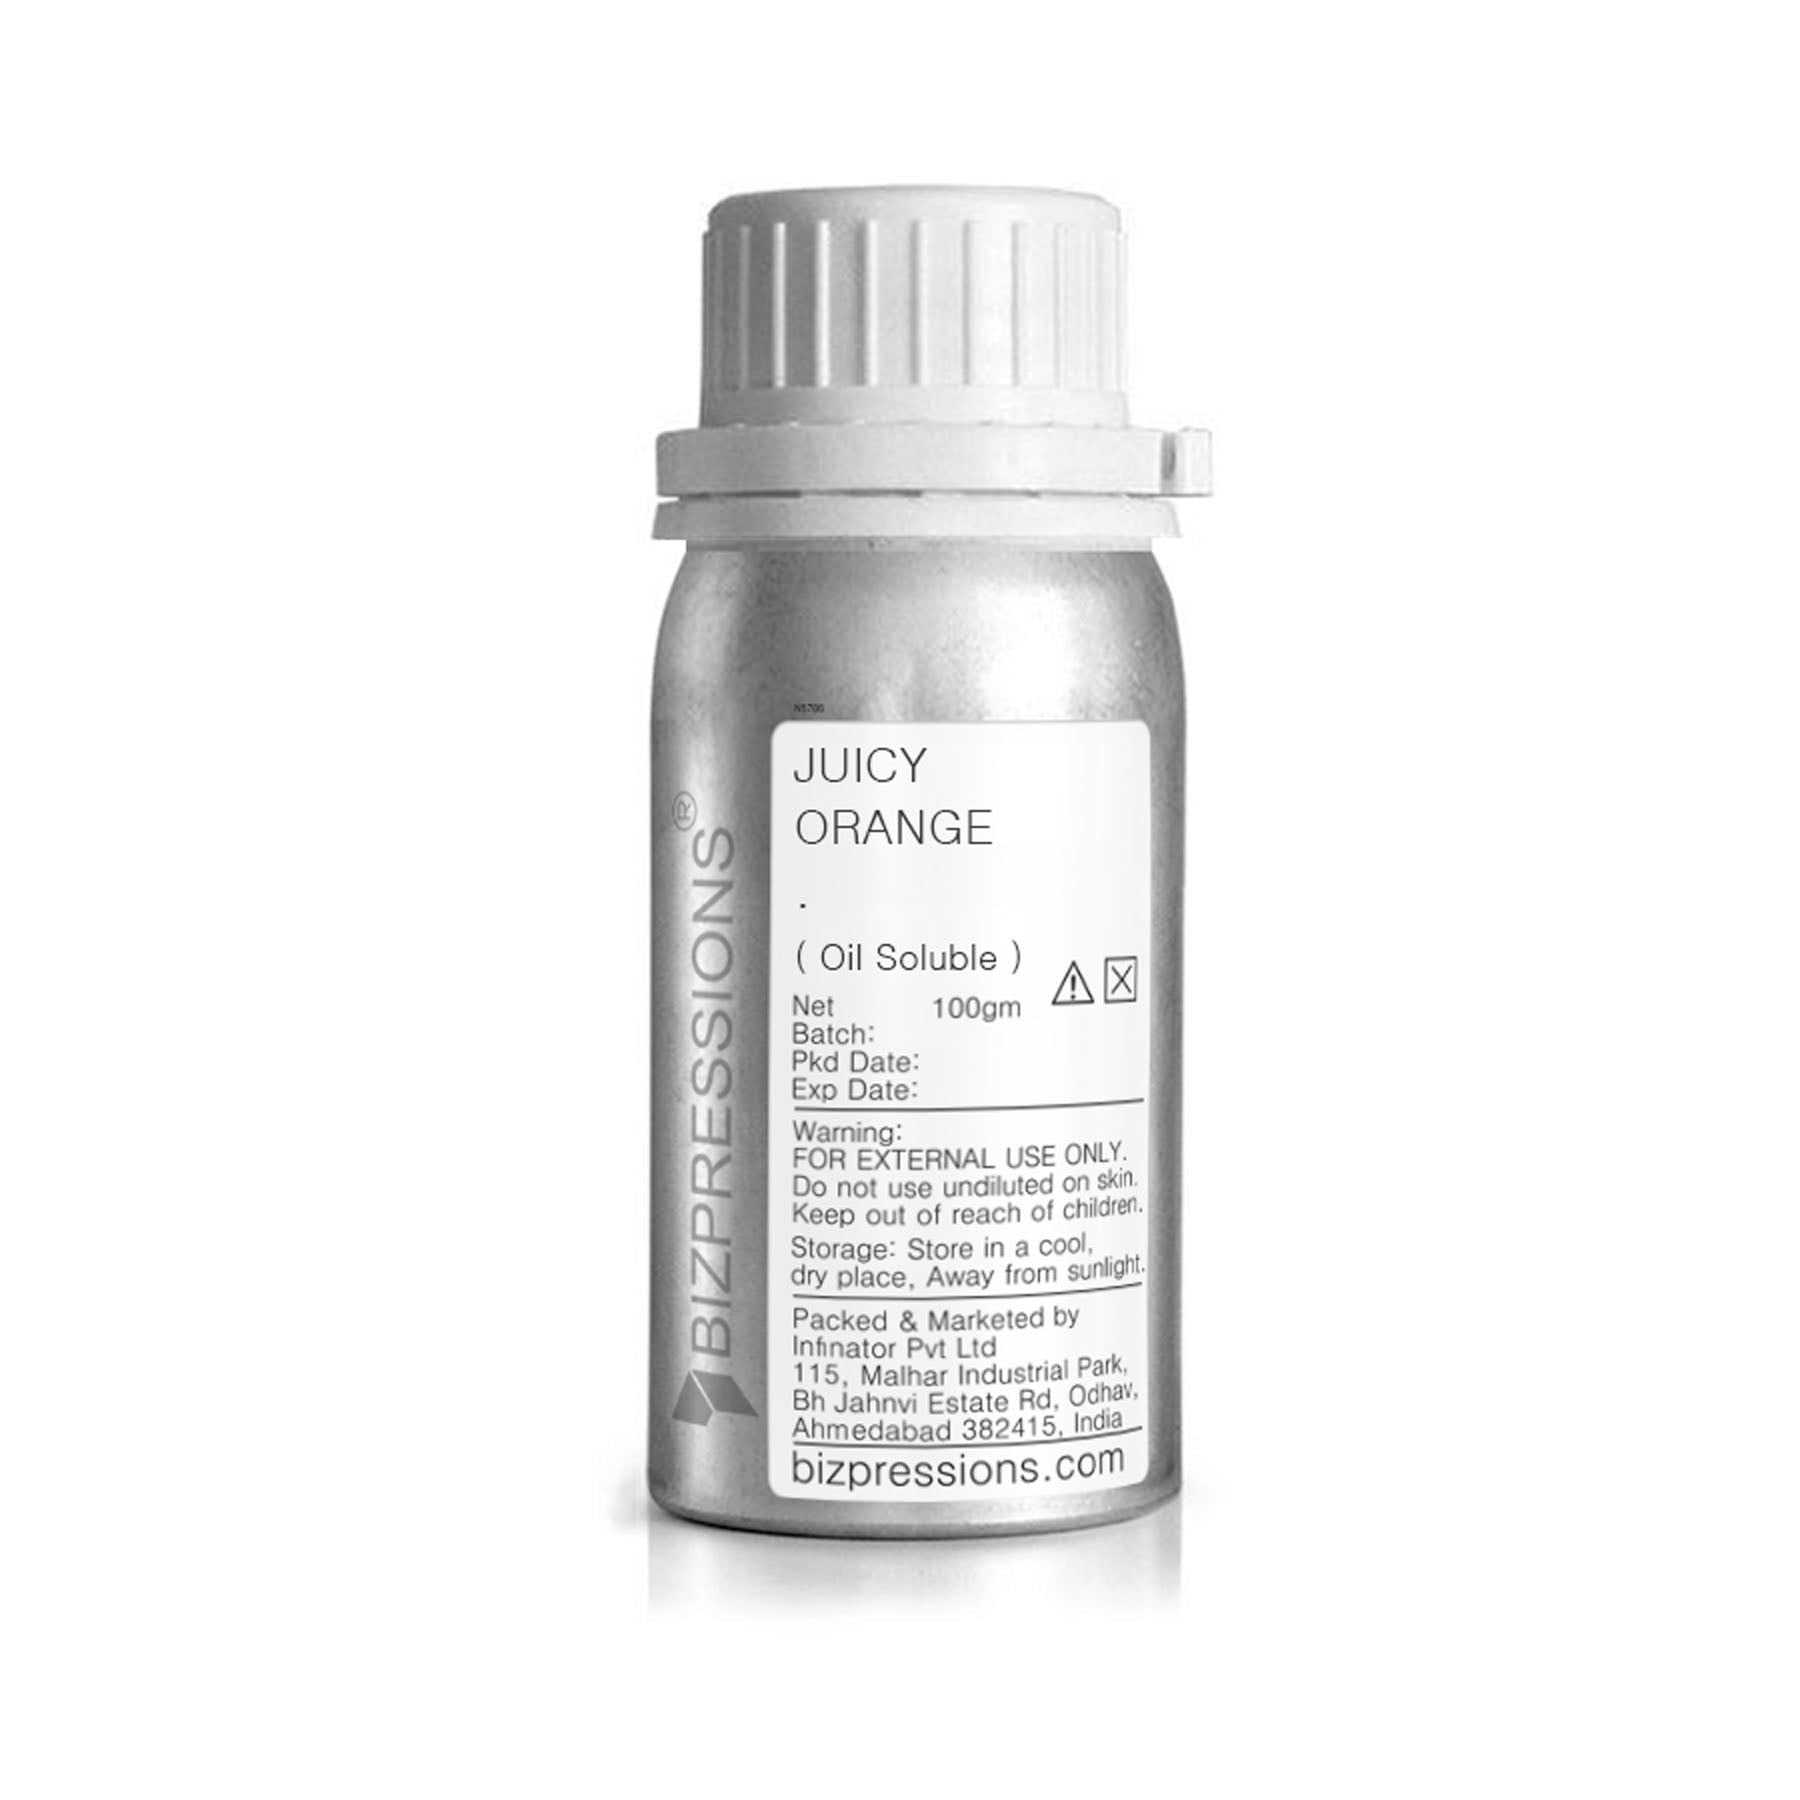 JUICY ORANGE - Fragrance ( Oil Soluble ) - 100 gm